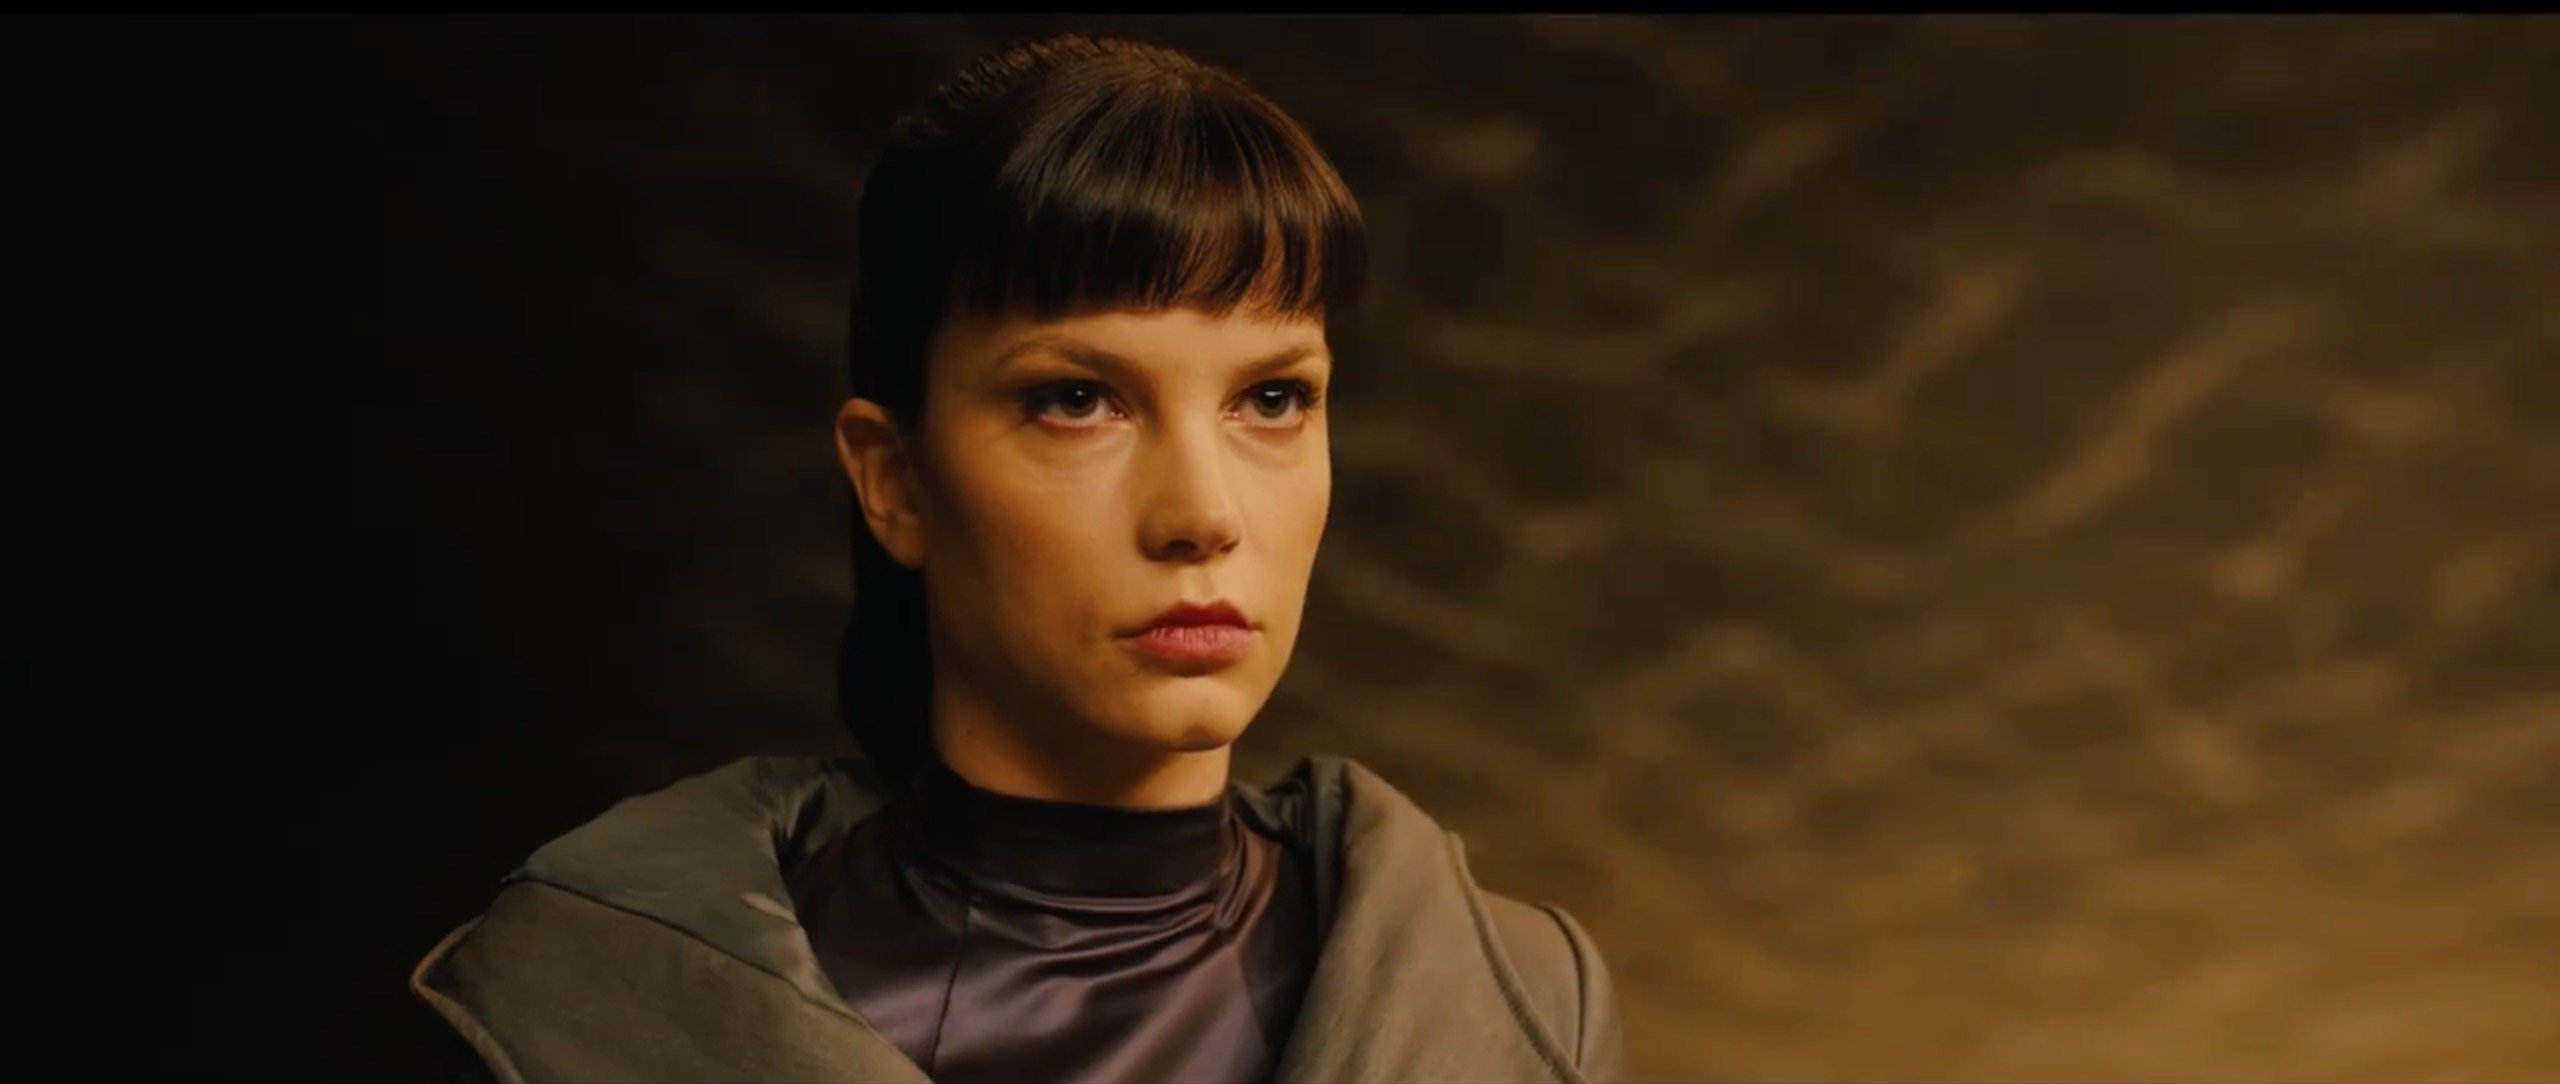 Sylvia Hoeks as Luv in Blade Runner 2049